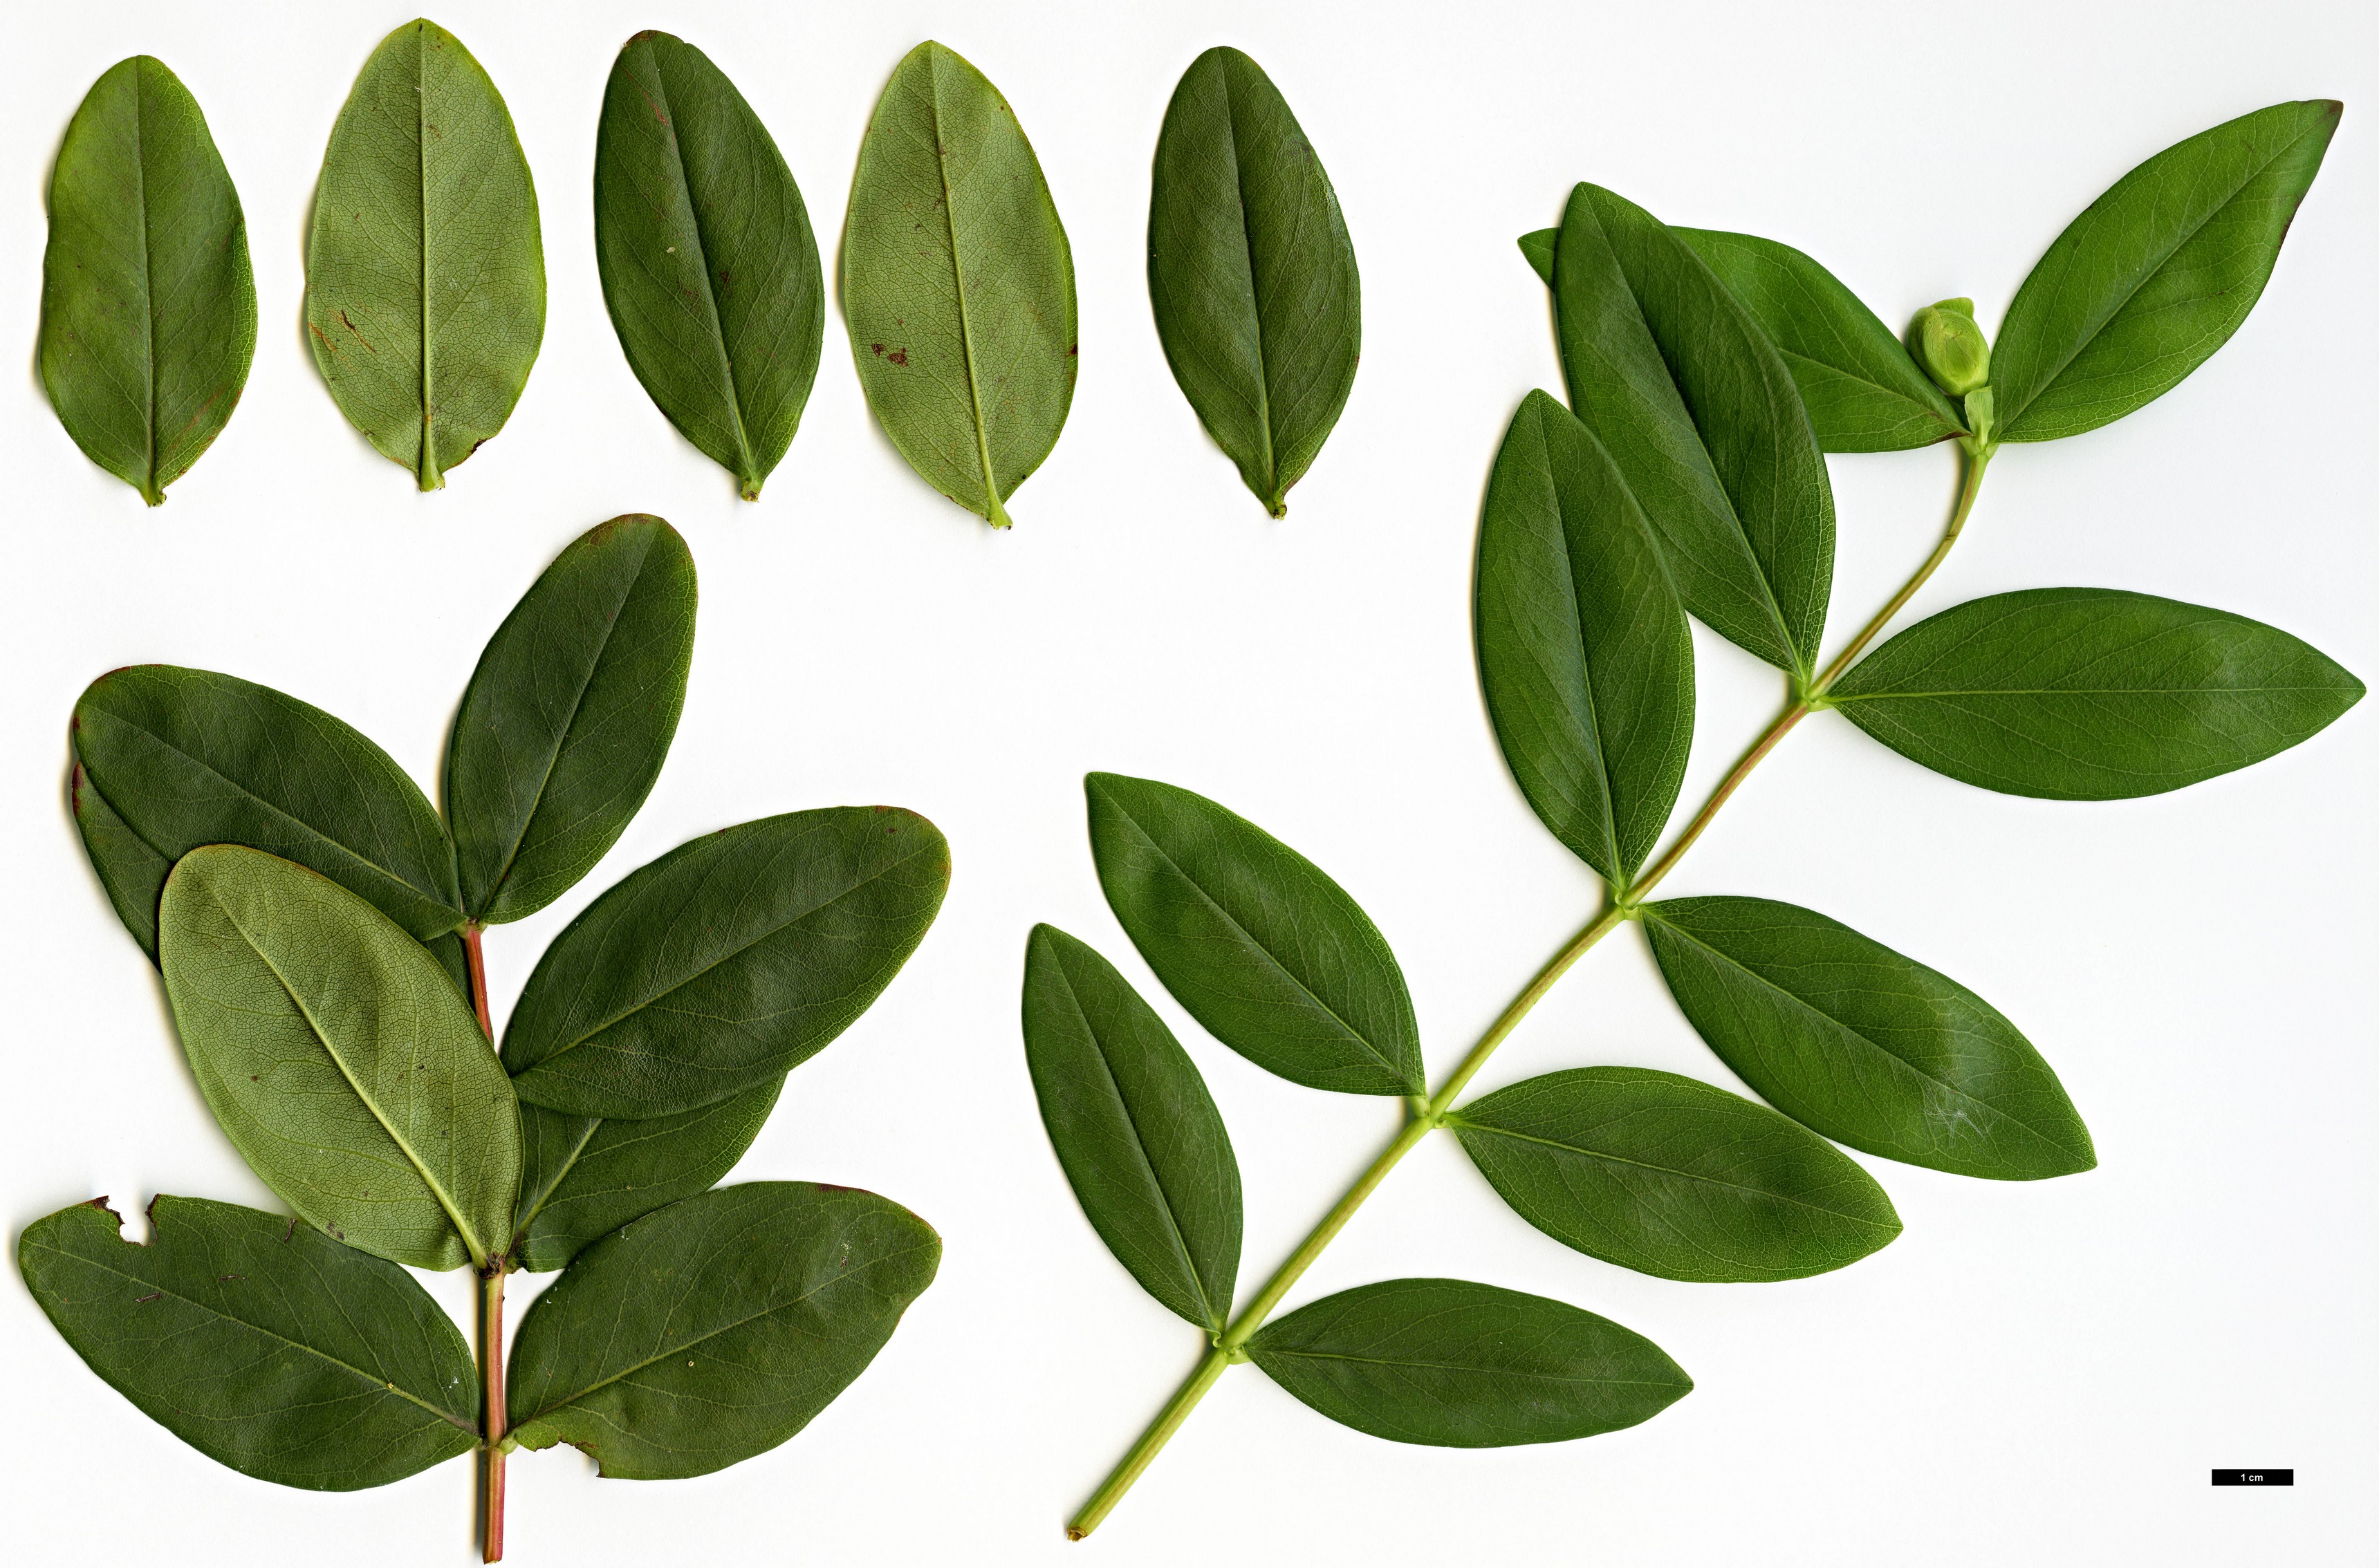 High resolution image: Family: Hypericaceae - Genus: Hypericum - Taxon: calycinum - SpeciesSub: f. luteum